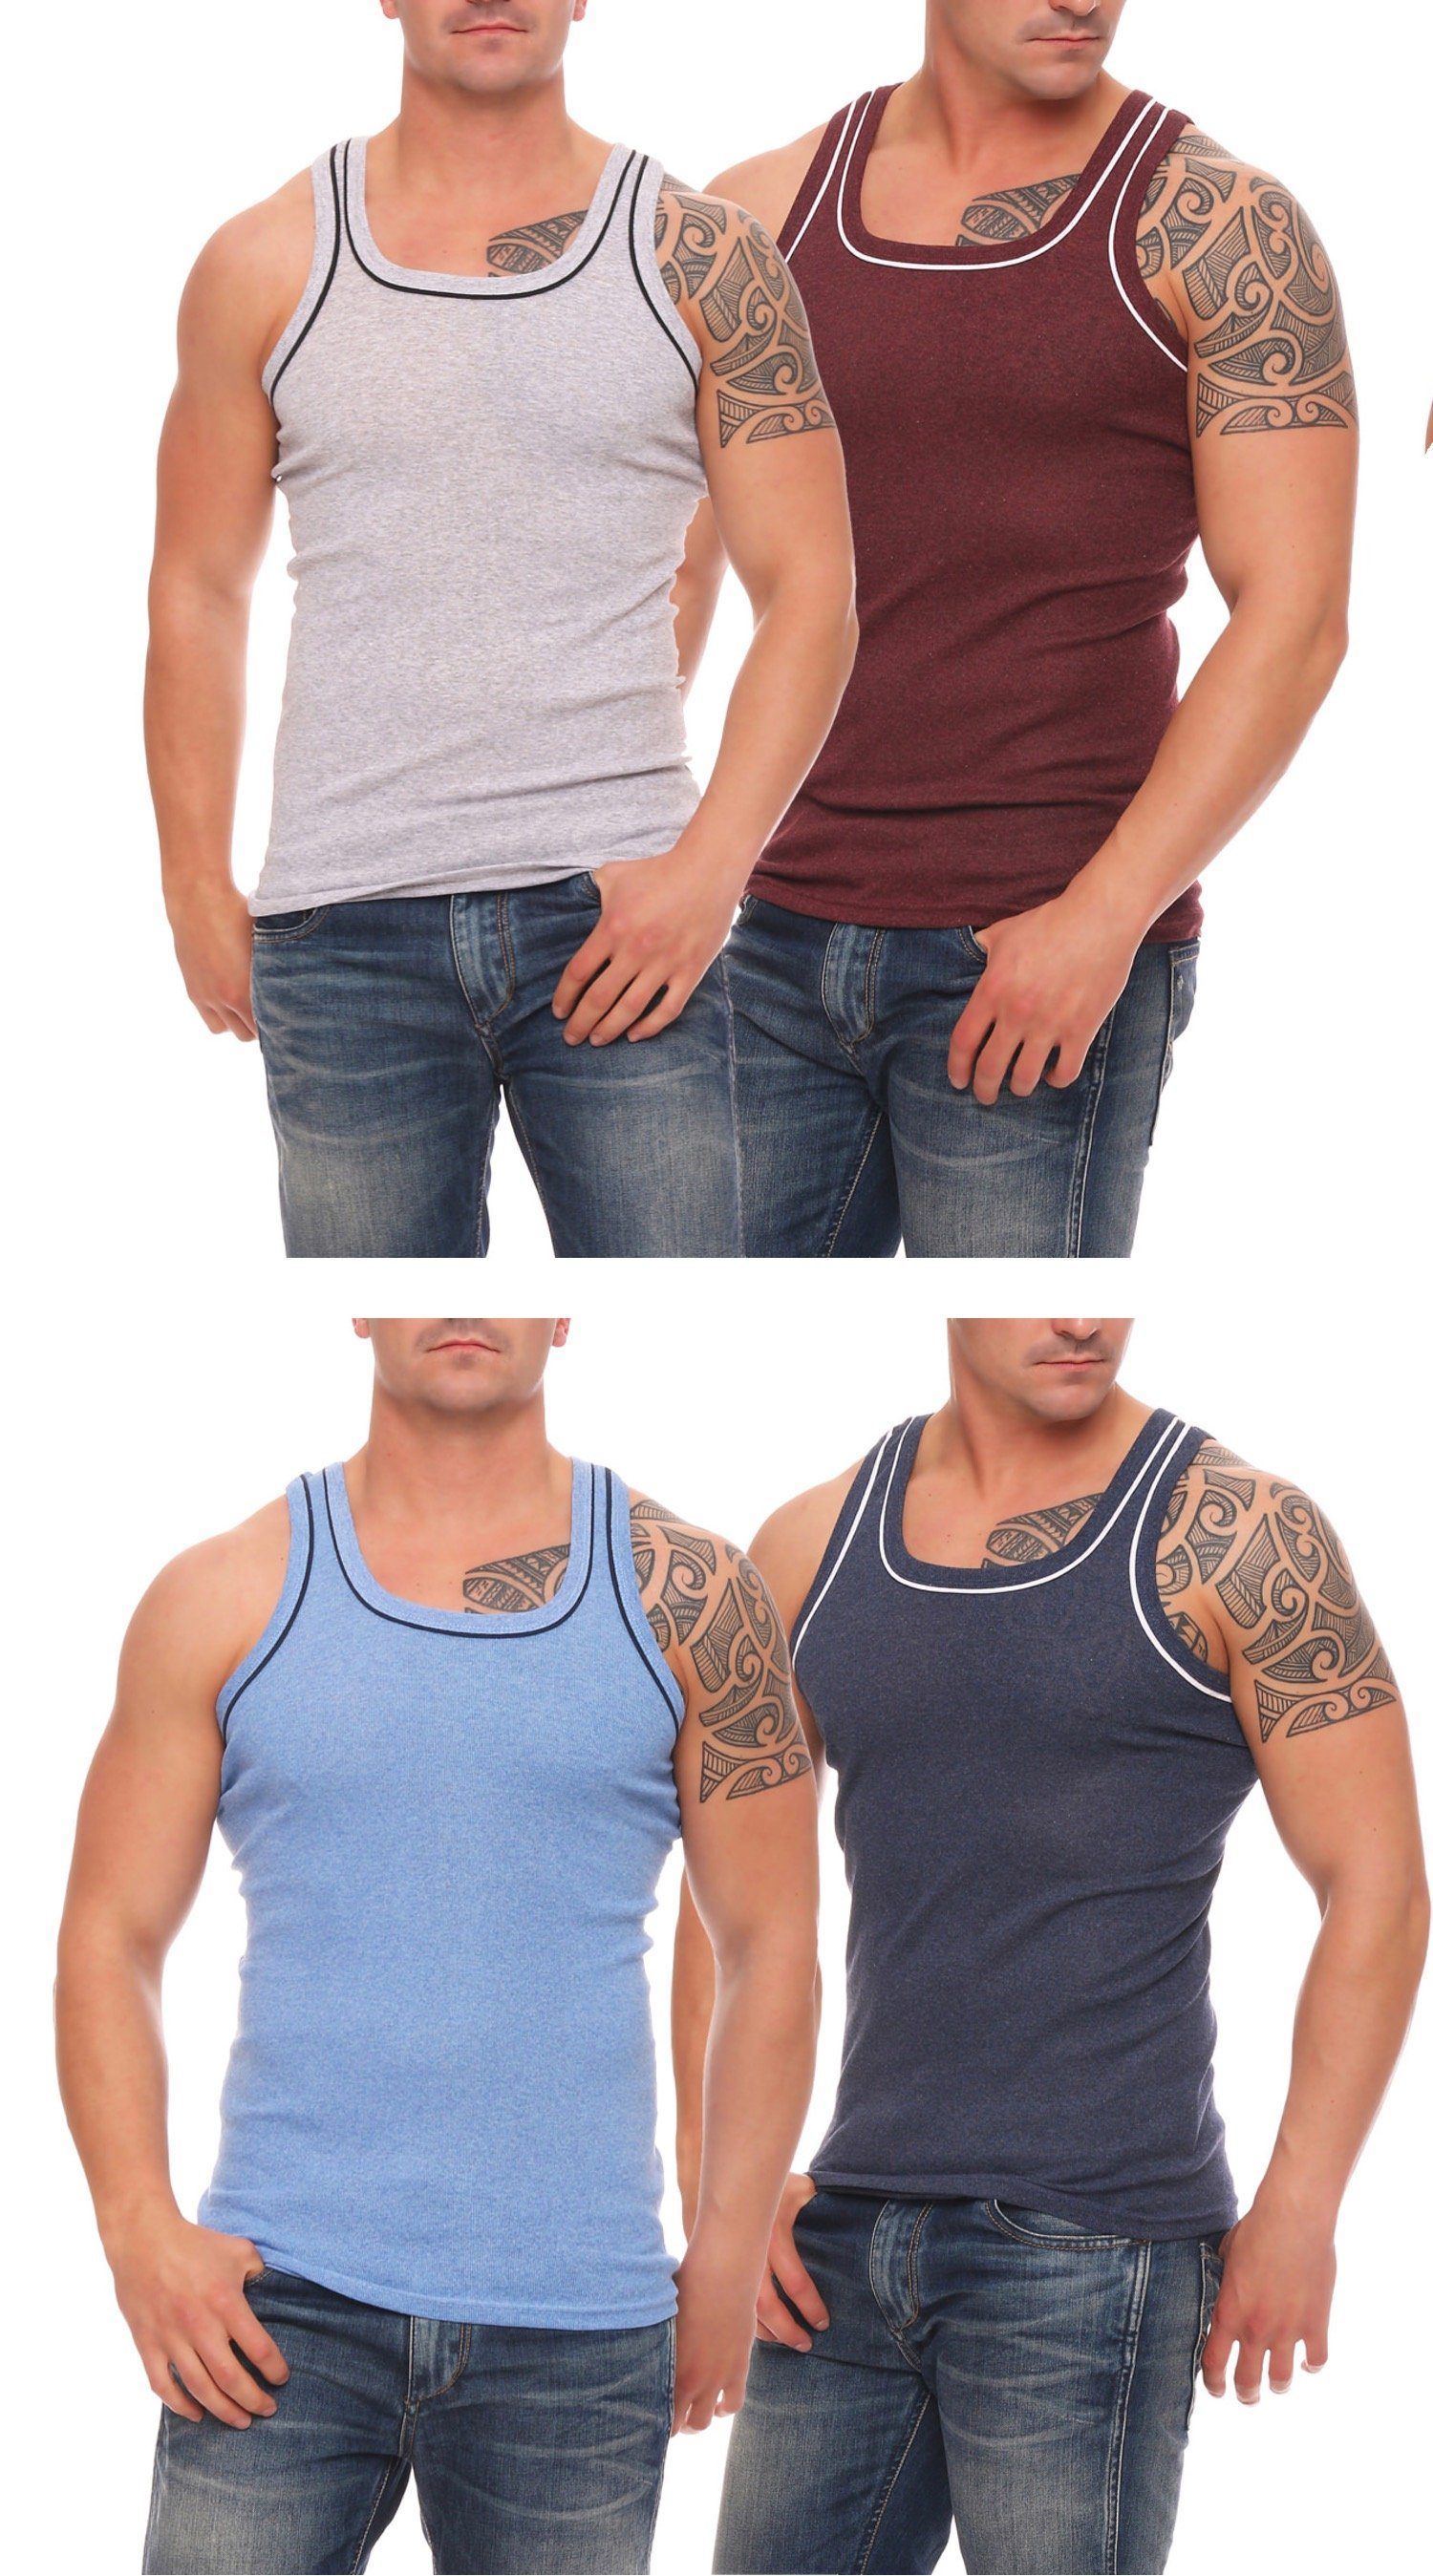 Cocain underwear Unterhemd Herren Unterhemden Vollachsel Achselhemden (4-St) produziert in Europa 4x grau-bordeaux-hellblau-dunkelblau